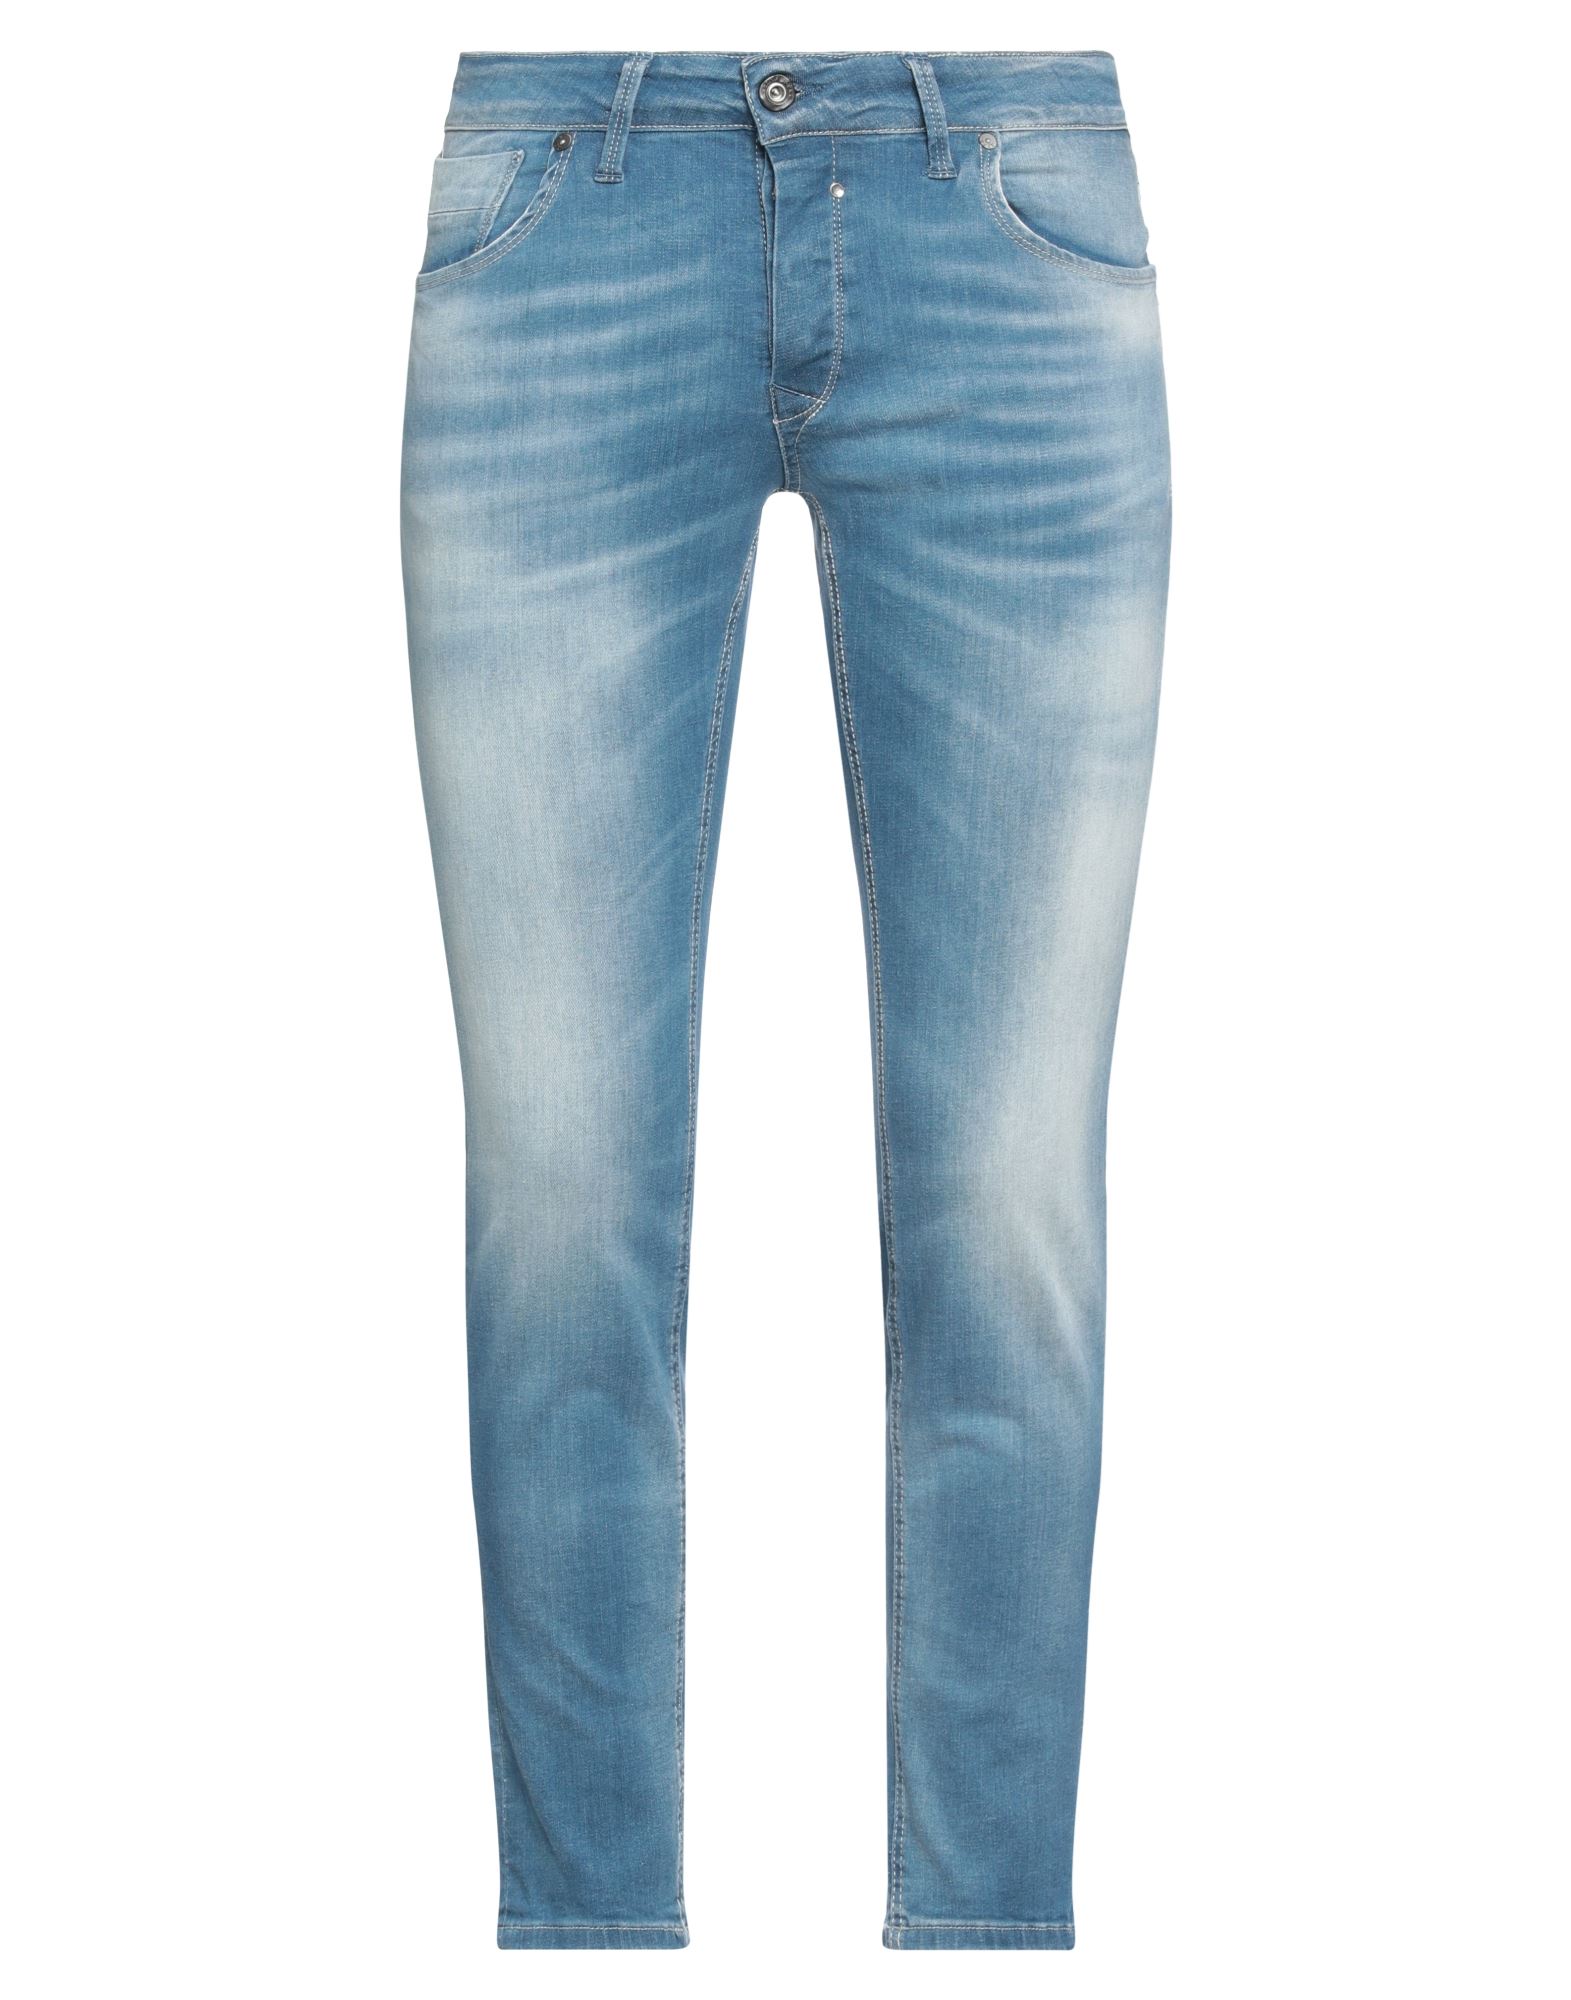 Jack & Jones Man Jeans Blue Size 31w-30l Cotton, Elastane